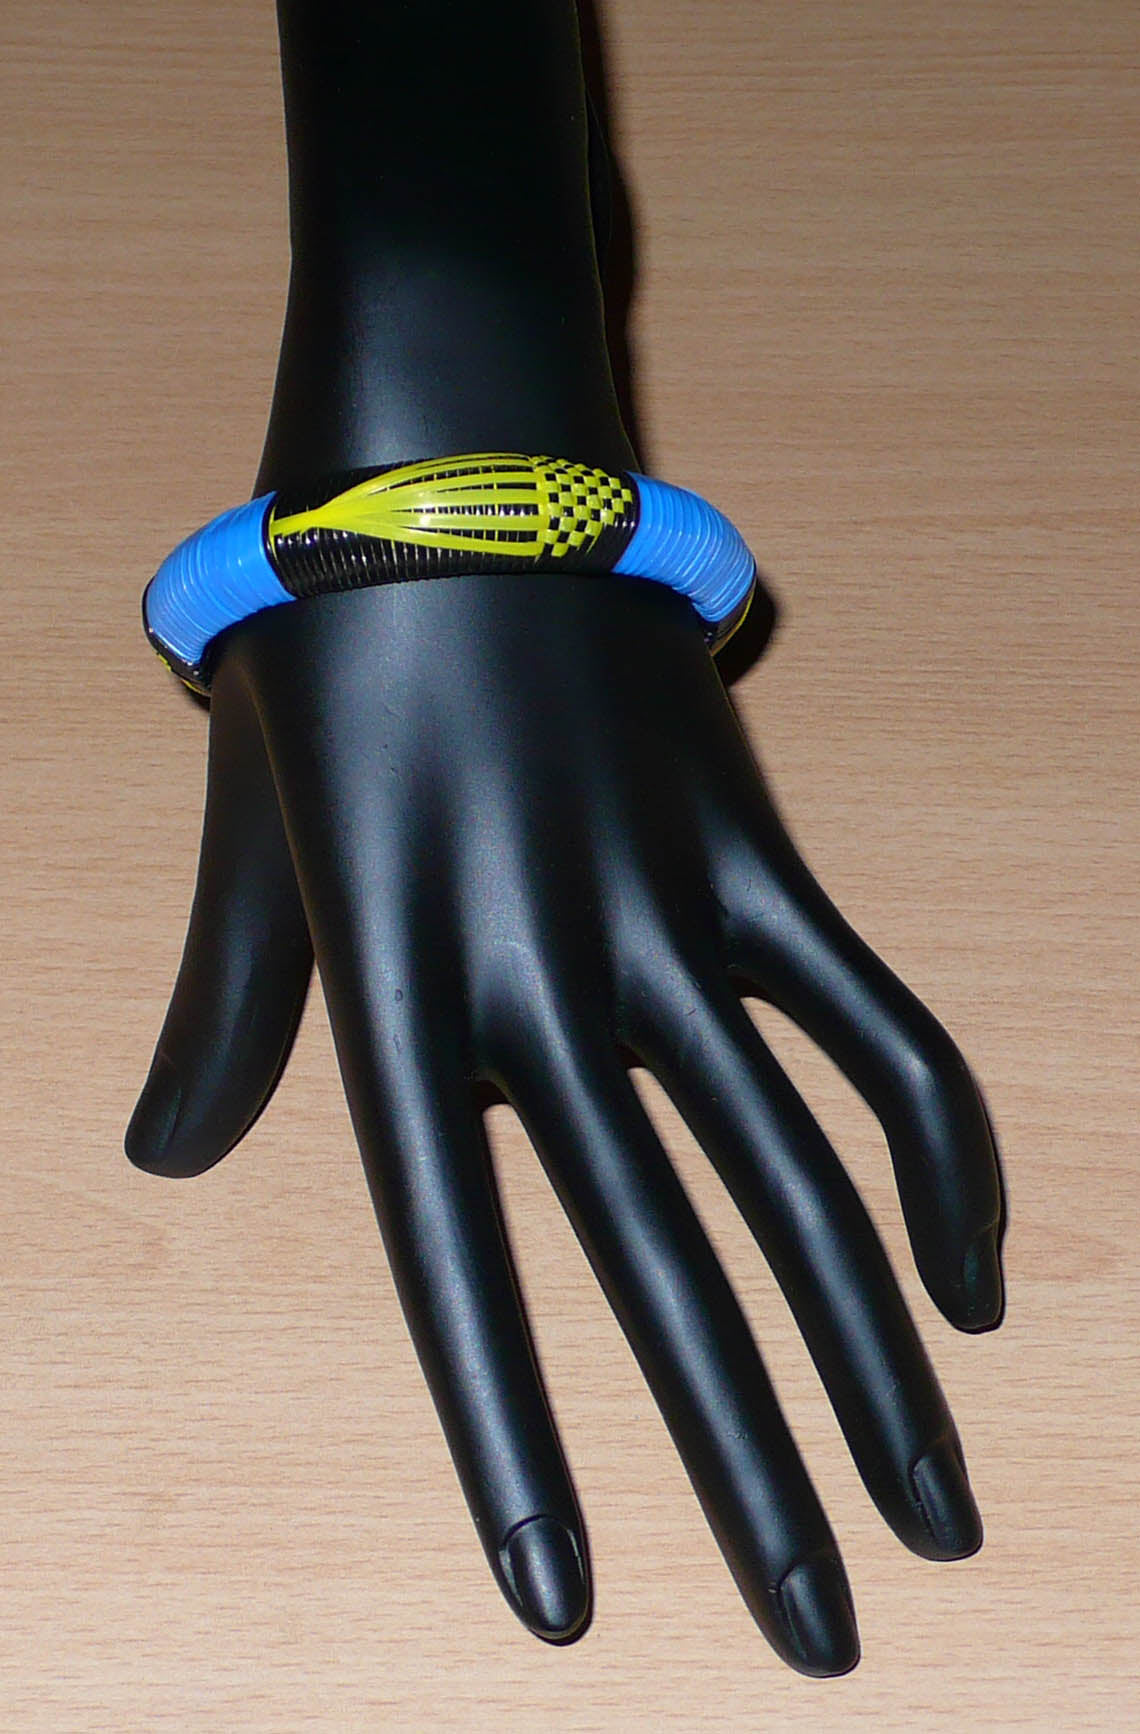 Conçu au Mali dans une démarche eco-responsable, ce bracelet africain à motifs ethniques se compose de fines bandes de plastique recyclé noir, bleu et jaune.  Le bracelet a une circonférence interne de 19,5 cm, un diamètre de 6,5 cm et une épaisseur de 1,3 cm.  Il peut être porté par une femme ou par un homme. Timeless Fineries